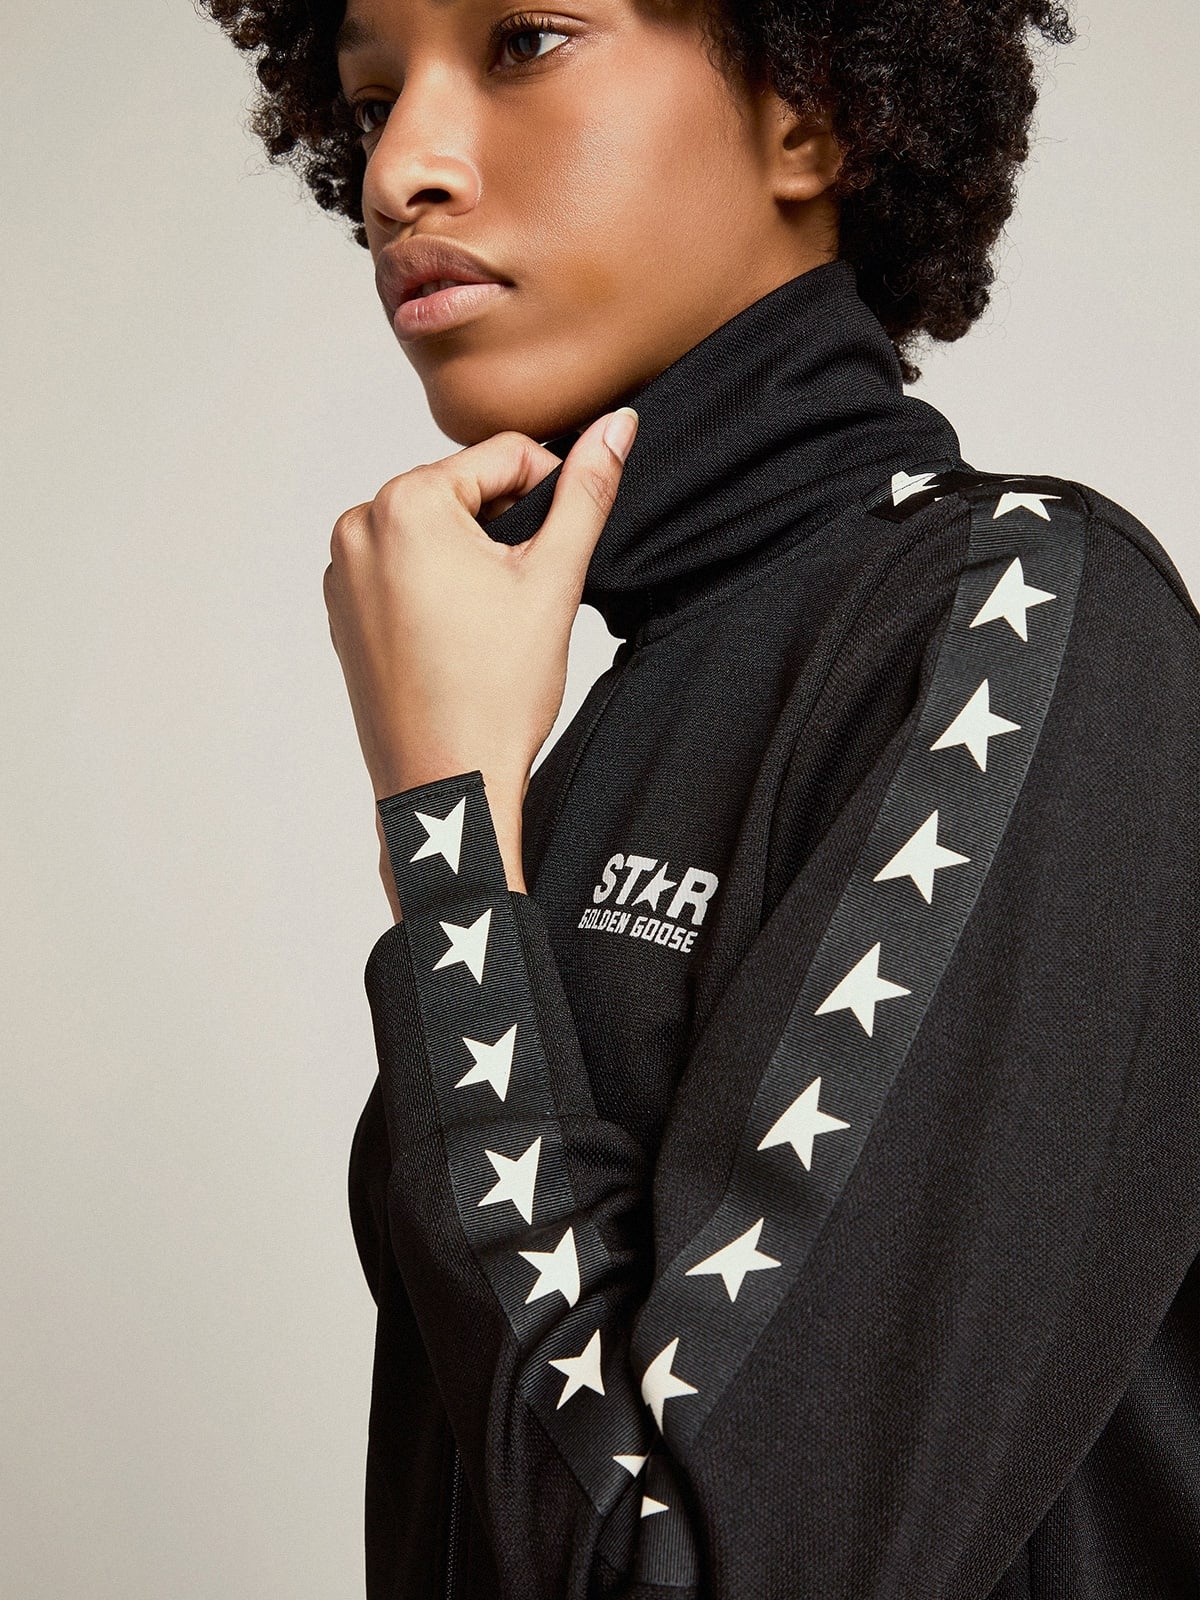 Women’s black zipped sweatshirt with white stars - 2